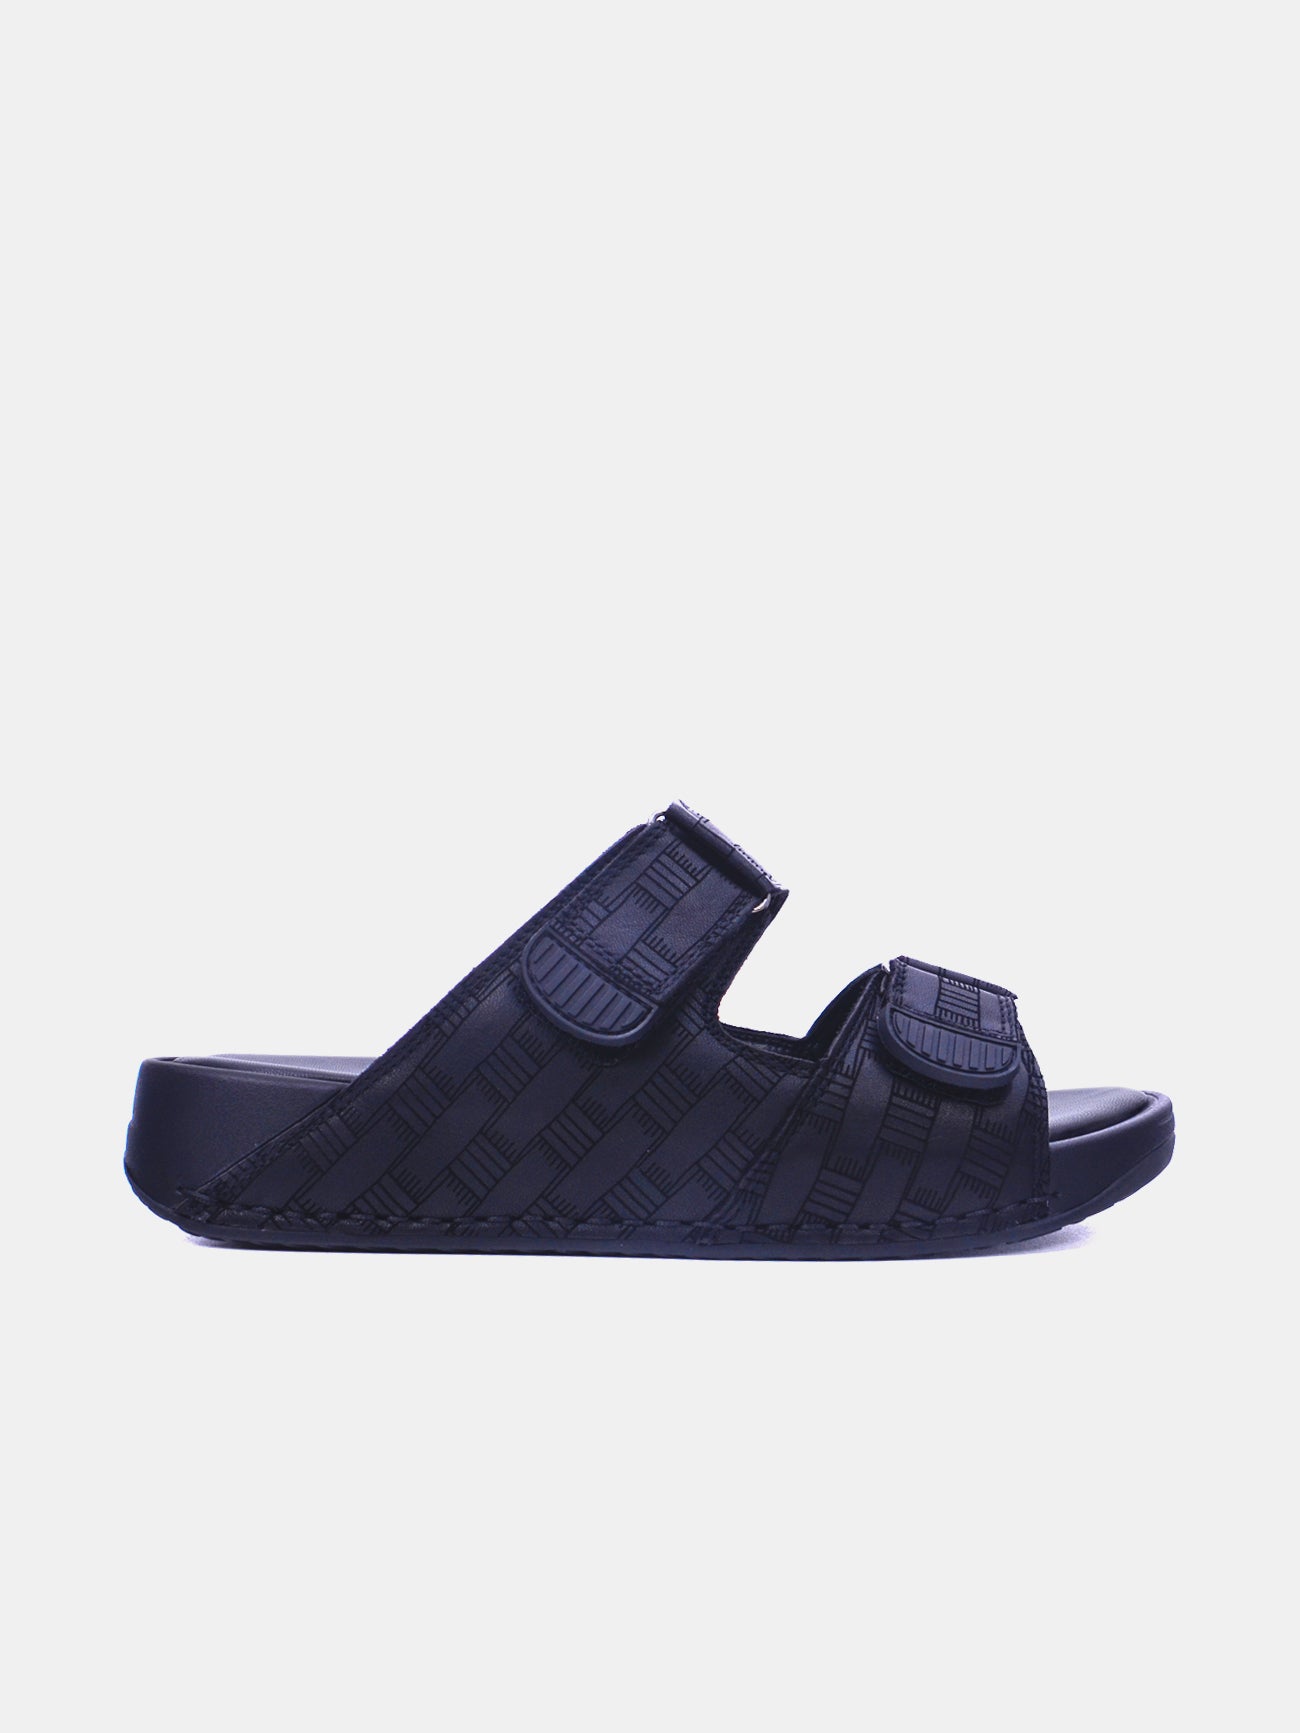 Barjeel Uno 2368-5 Men's Arabic Sandals